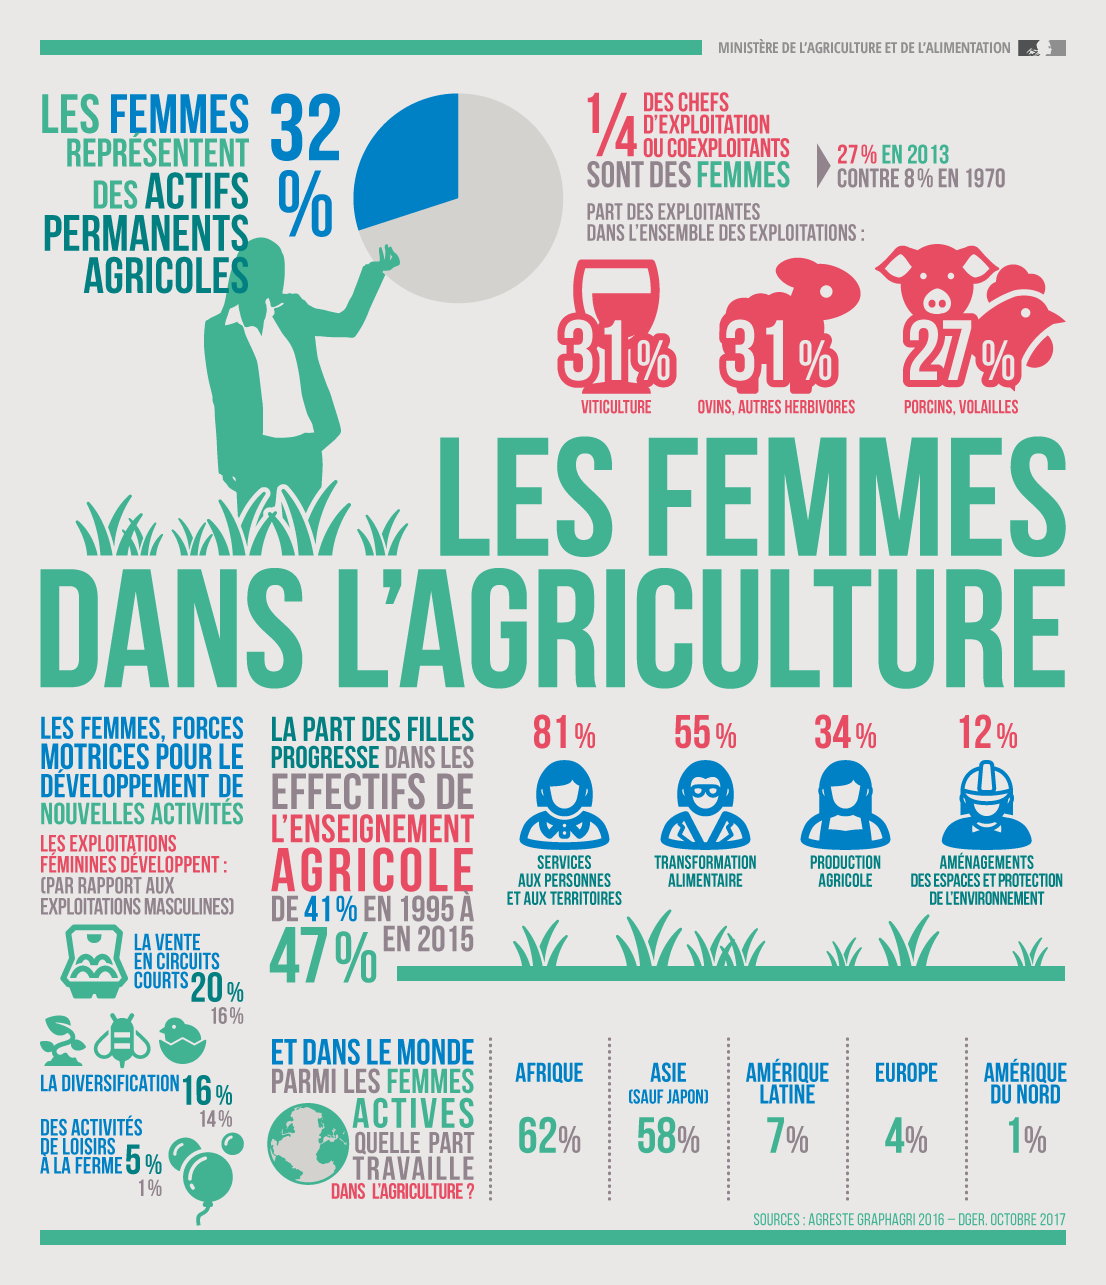 Les femmes dans l'agriculture